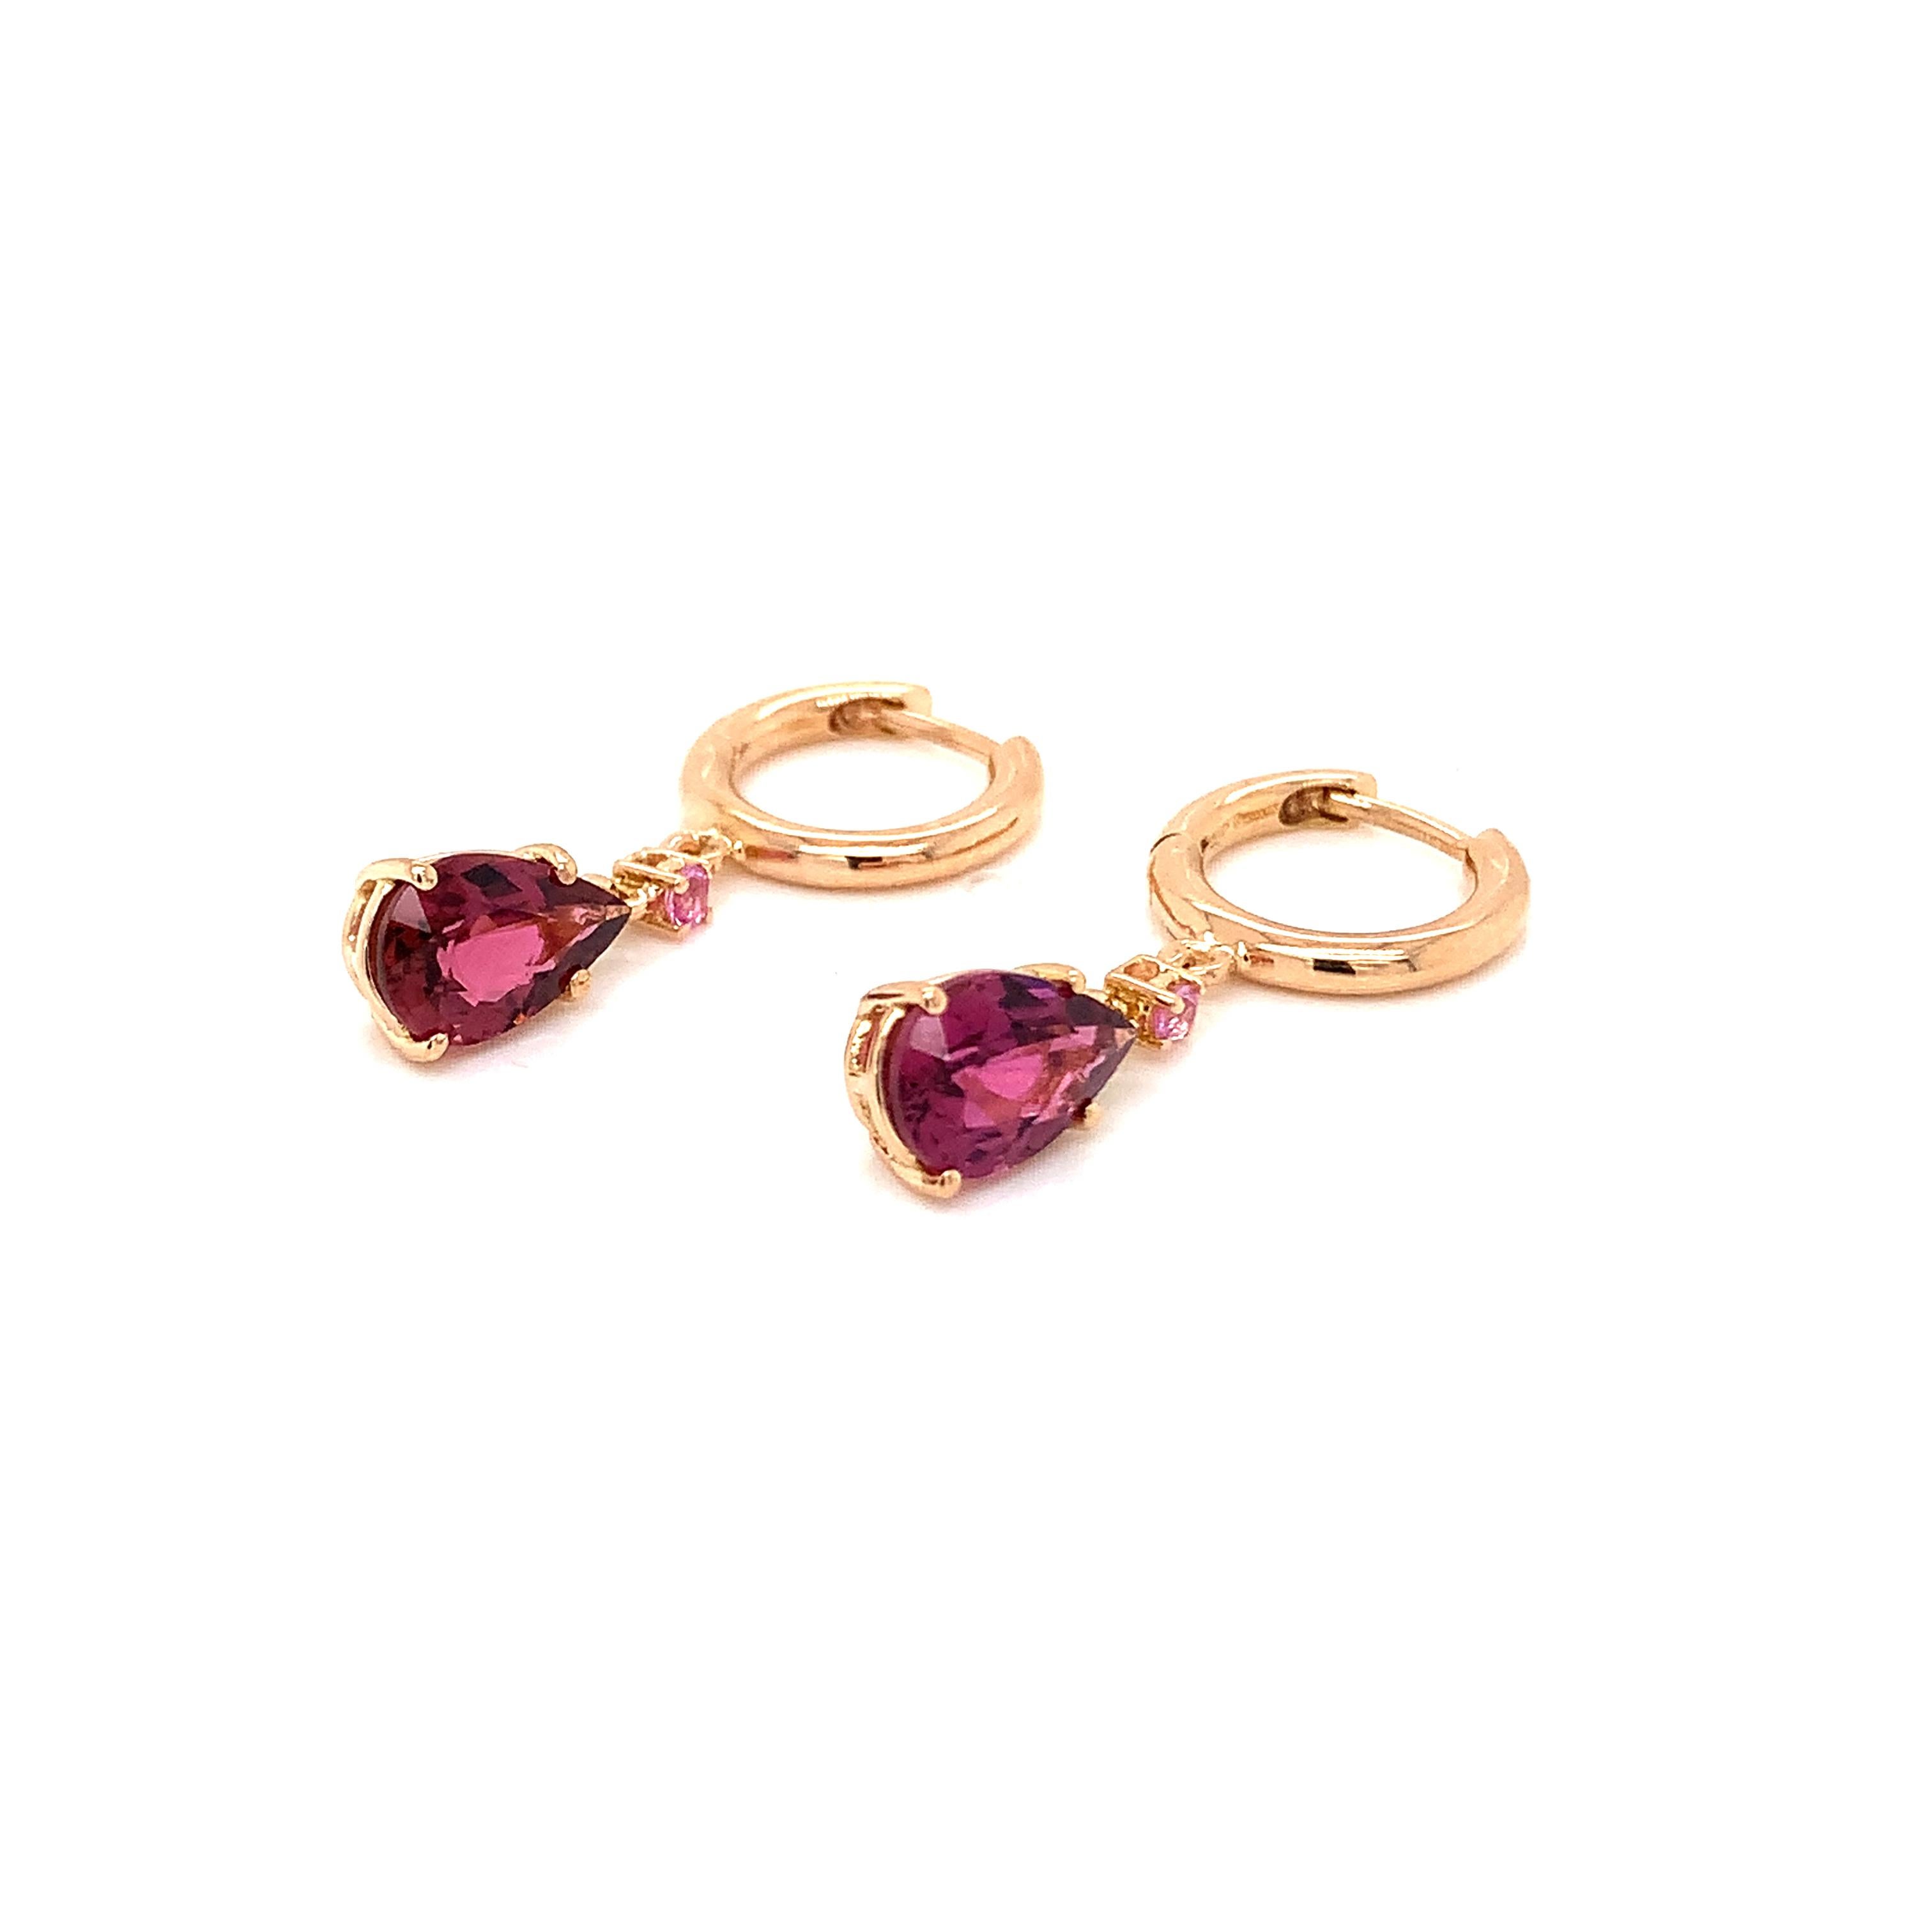 Élevez votre élégance avec les boucles d'oreilles pendantes Garavelli en or rose 18 carats avec tourmaline rose et saphirs roses. Ces boucles d'oreilles exquises, fabriquées avec précision et style, sont un témoignage de beauté et de